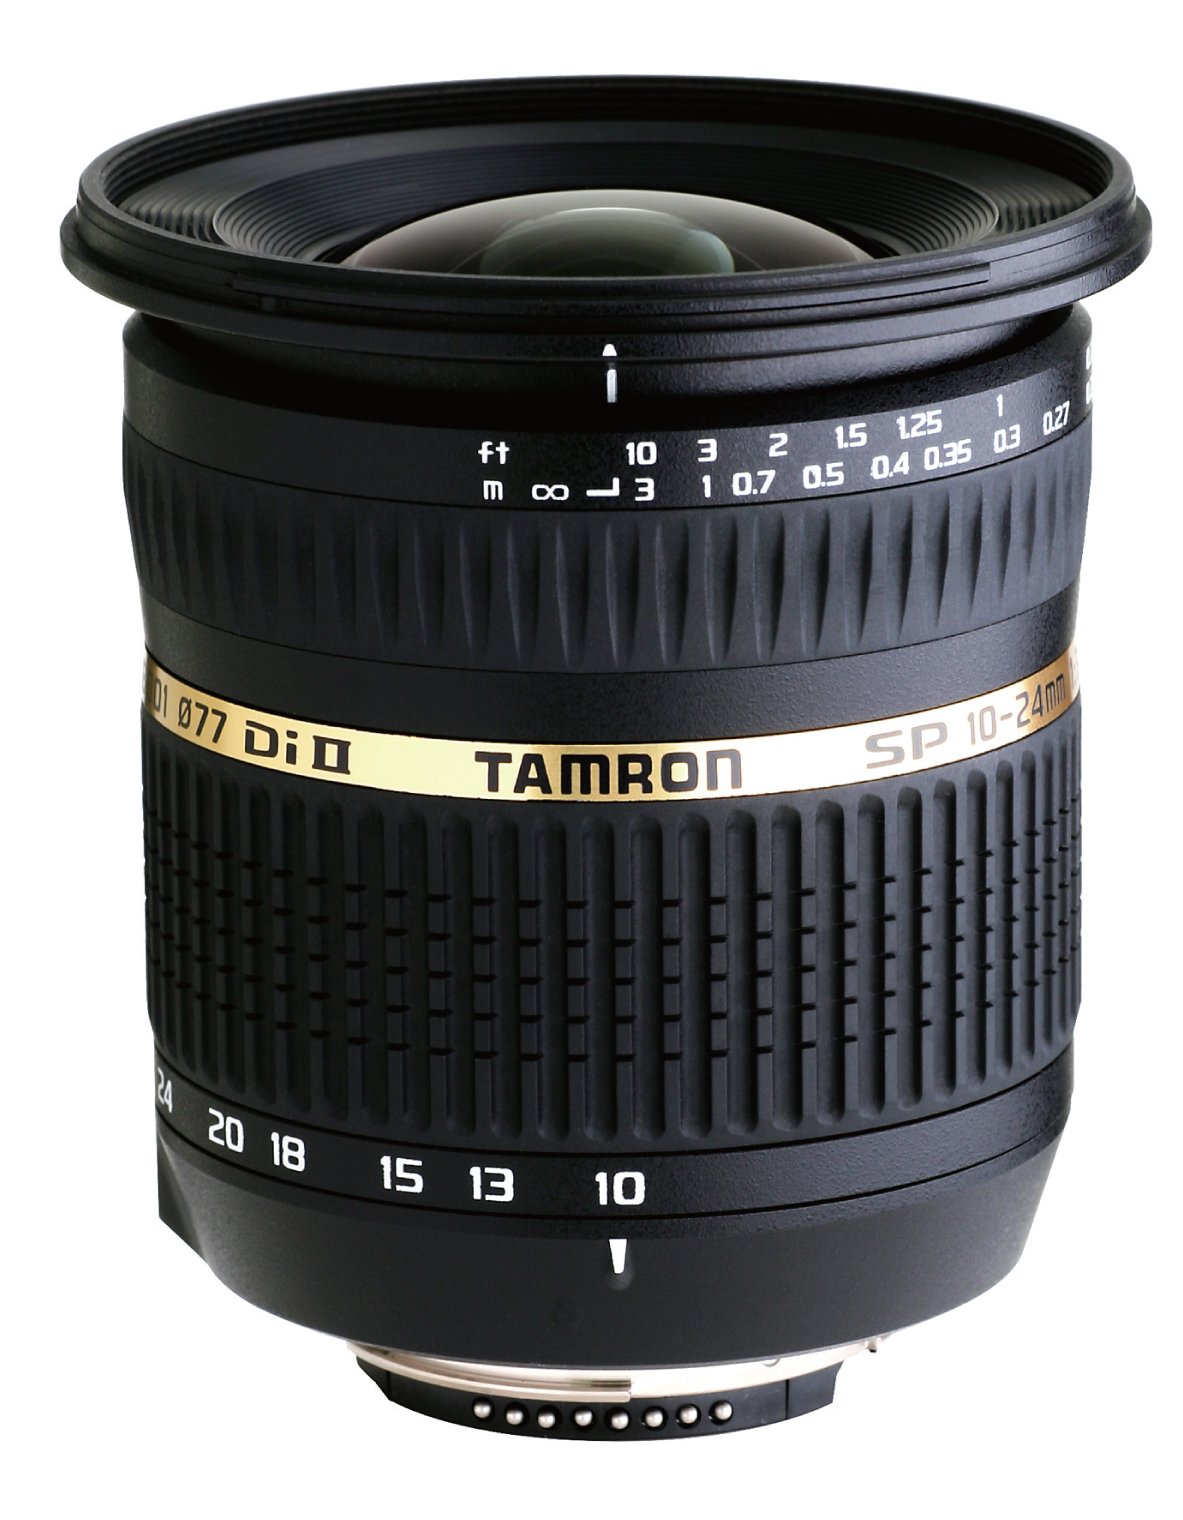 Tamron AF 10-24mm f/3.5-4.5 SP Di II LD Aspherical (IF) Lens for Canon Digital SLR Cameras (Model B001E)